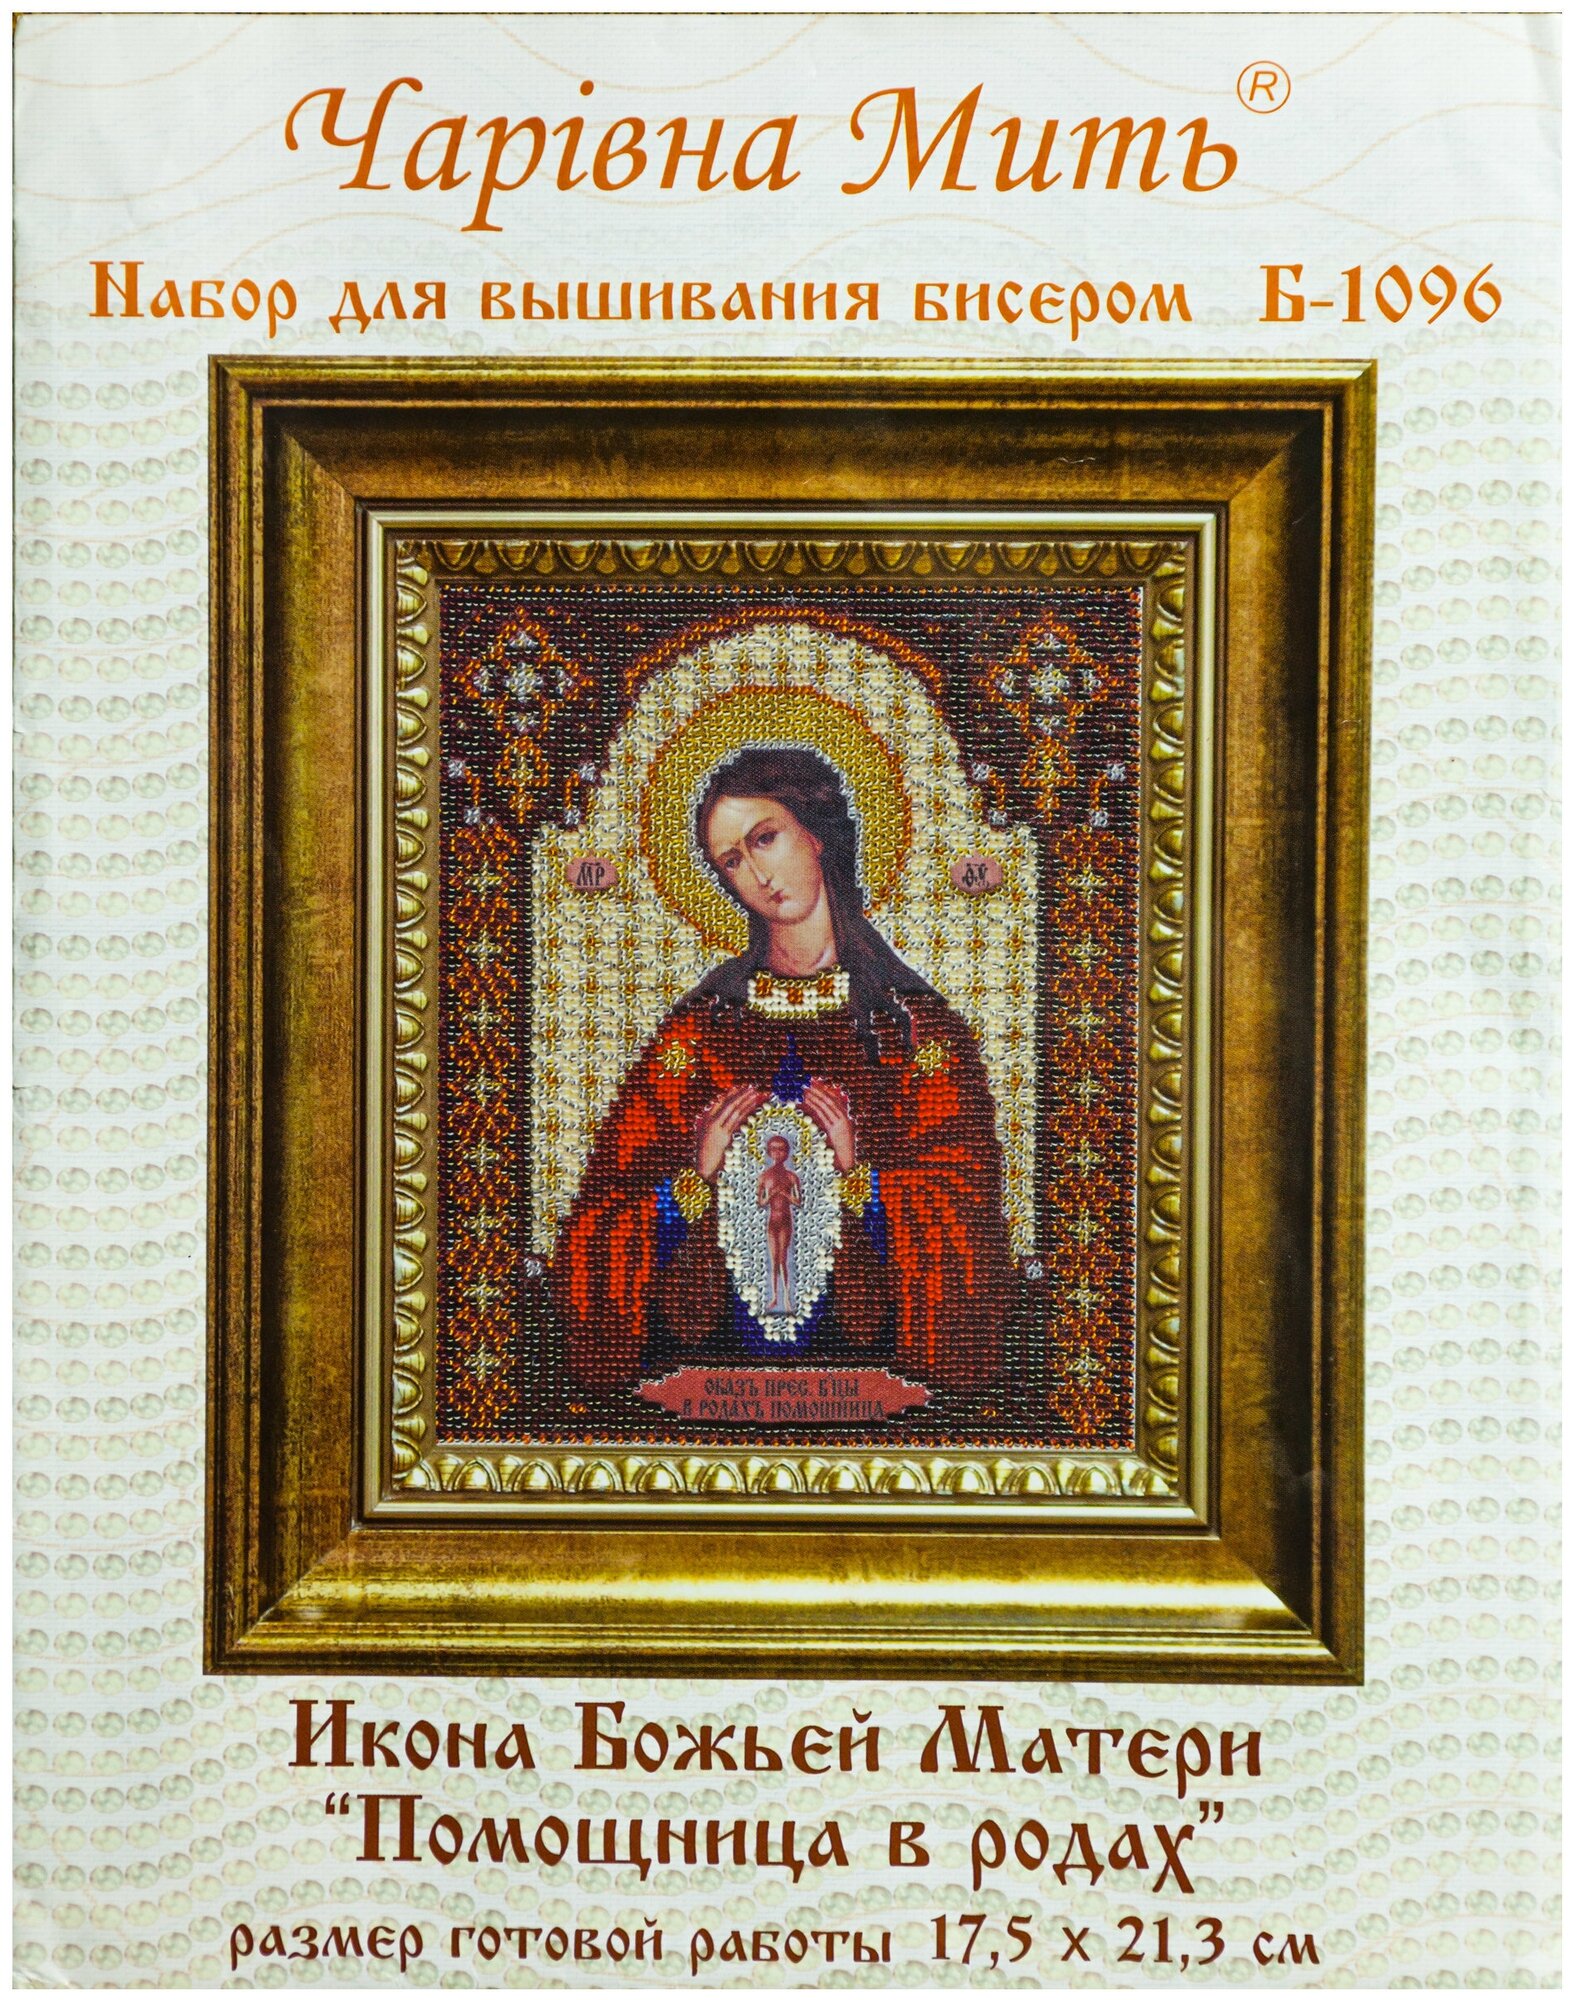 Б-1096 "Икона Божьей Матери Помощница в родах" - чм Чарiвна мить - фото №1